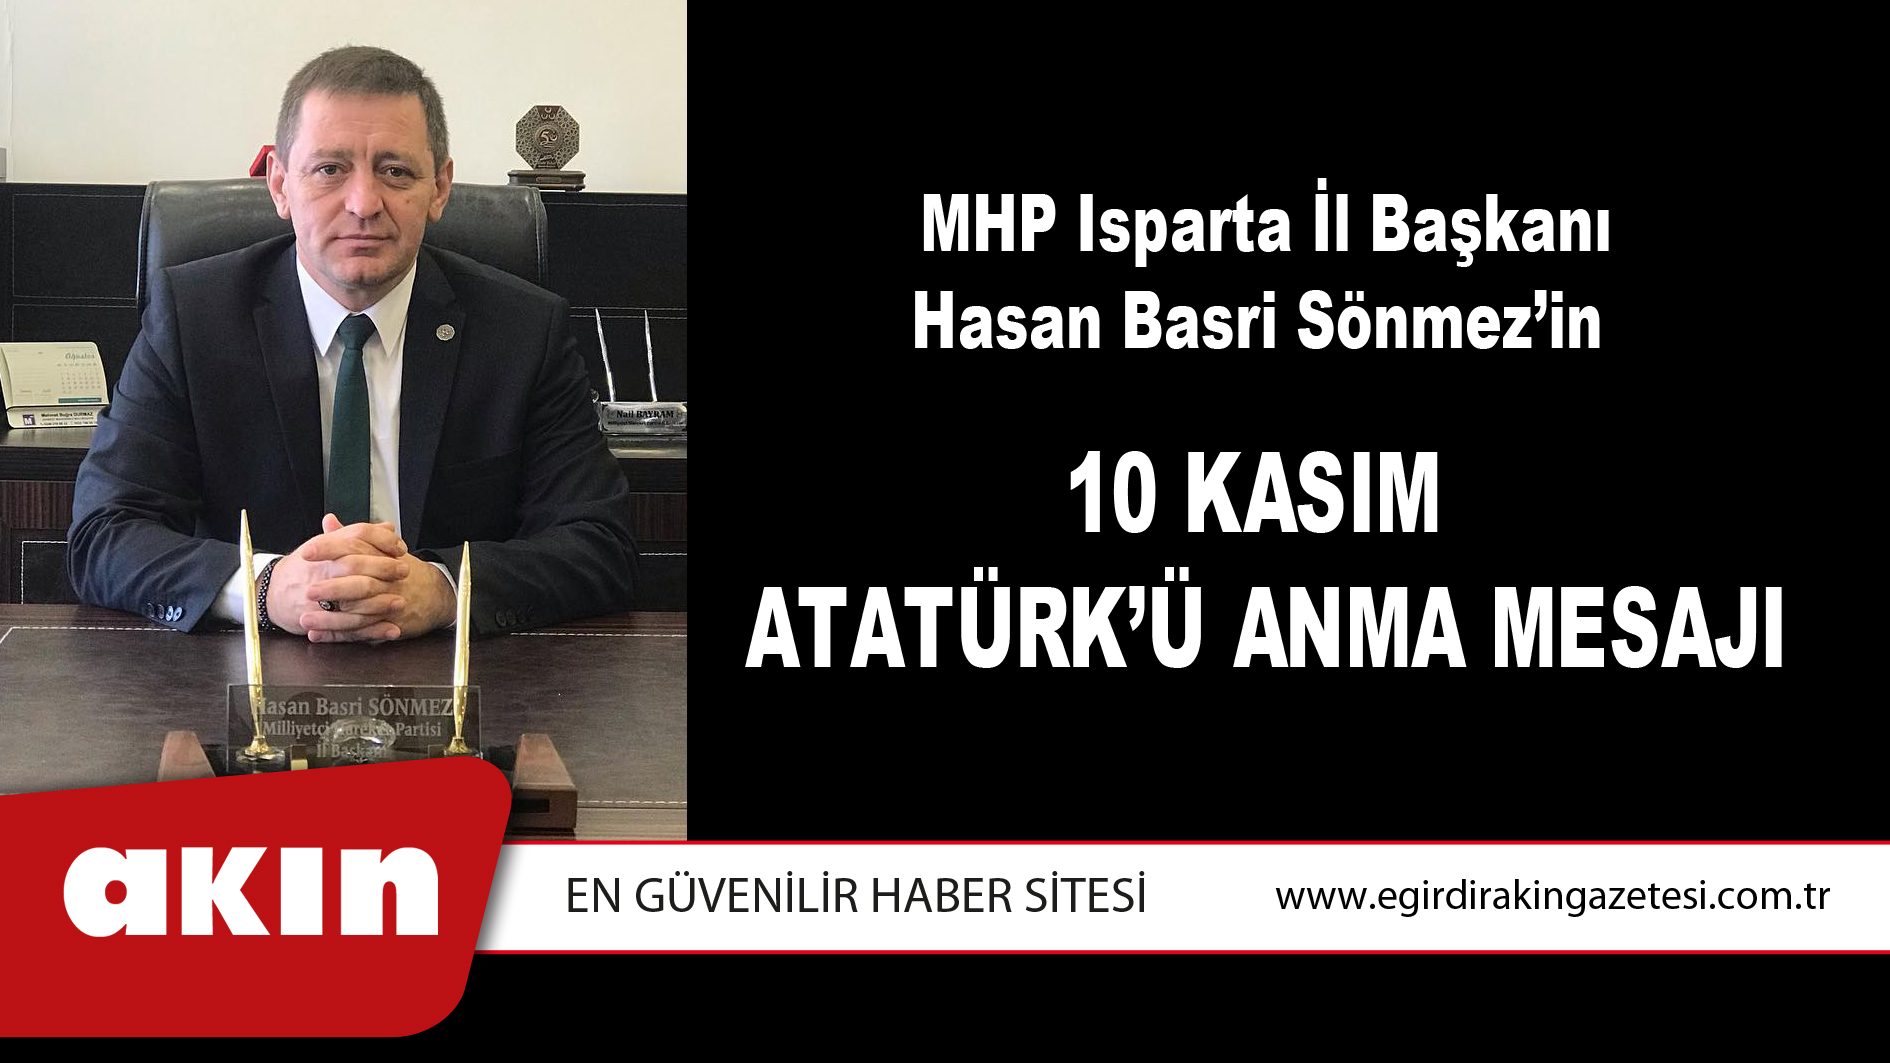 eğirdir haber,akın gazetesi,egirdir haberler,son dakika,MHP Isparta İl Başkanı Hasan Basri Sönmez’in  10 Kasım Atatürk’ü Anma Mesajı